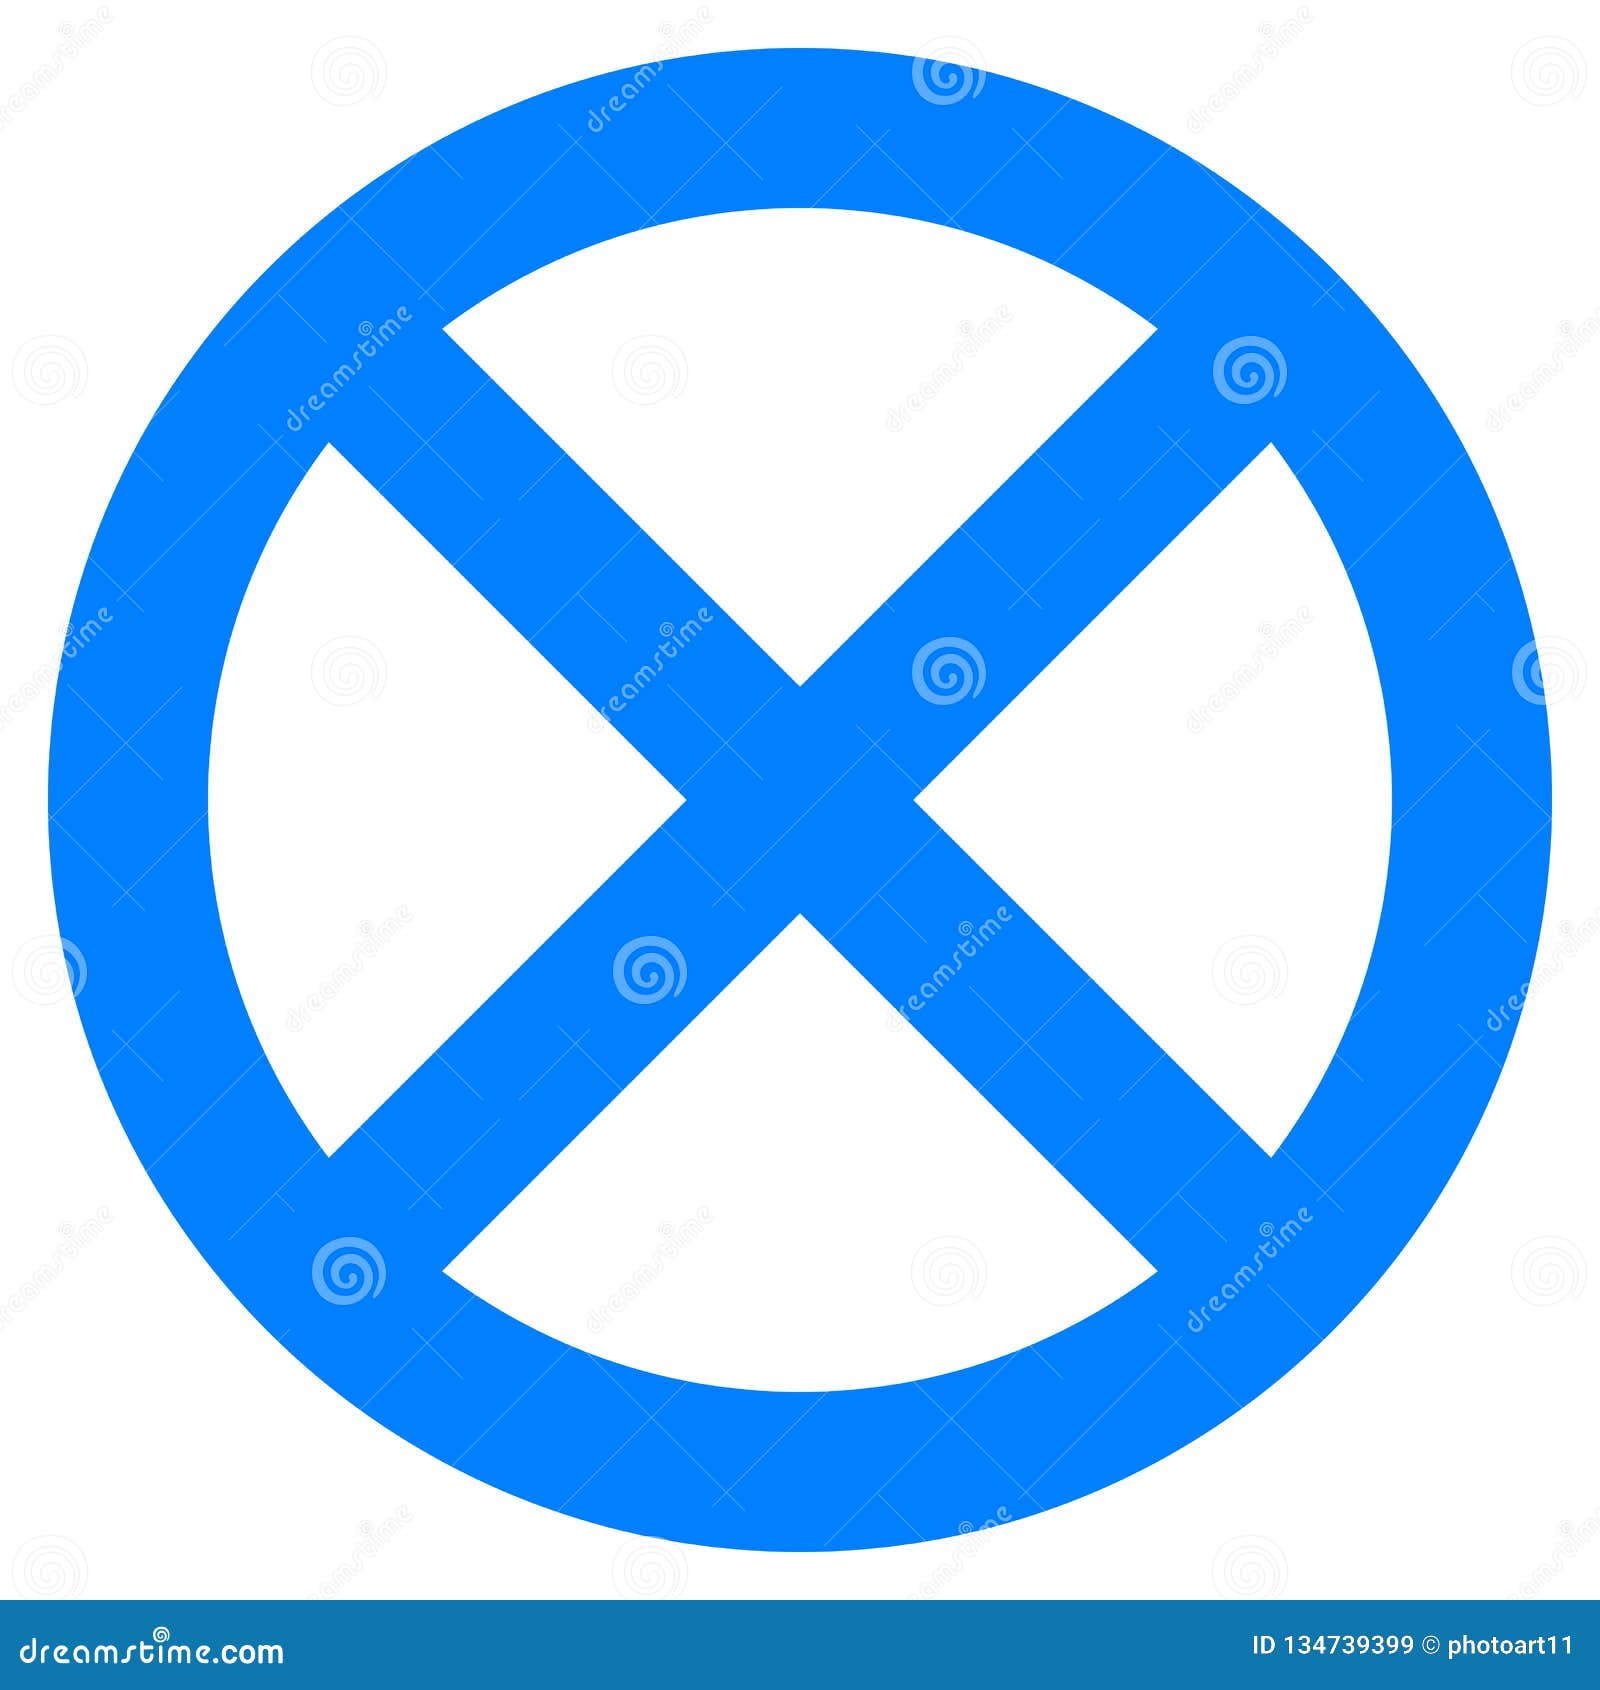 Что означает перечеркнутый синий круг. Перечеркнутый синий круг. Знак круглый синий перечеркнутый. Дорожный знак перечеркнутый круг. Синий знак с белой полосой перечеркнут.